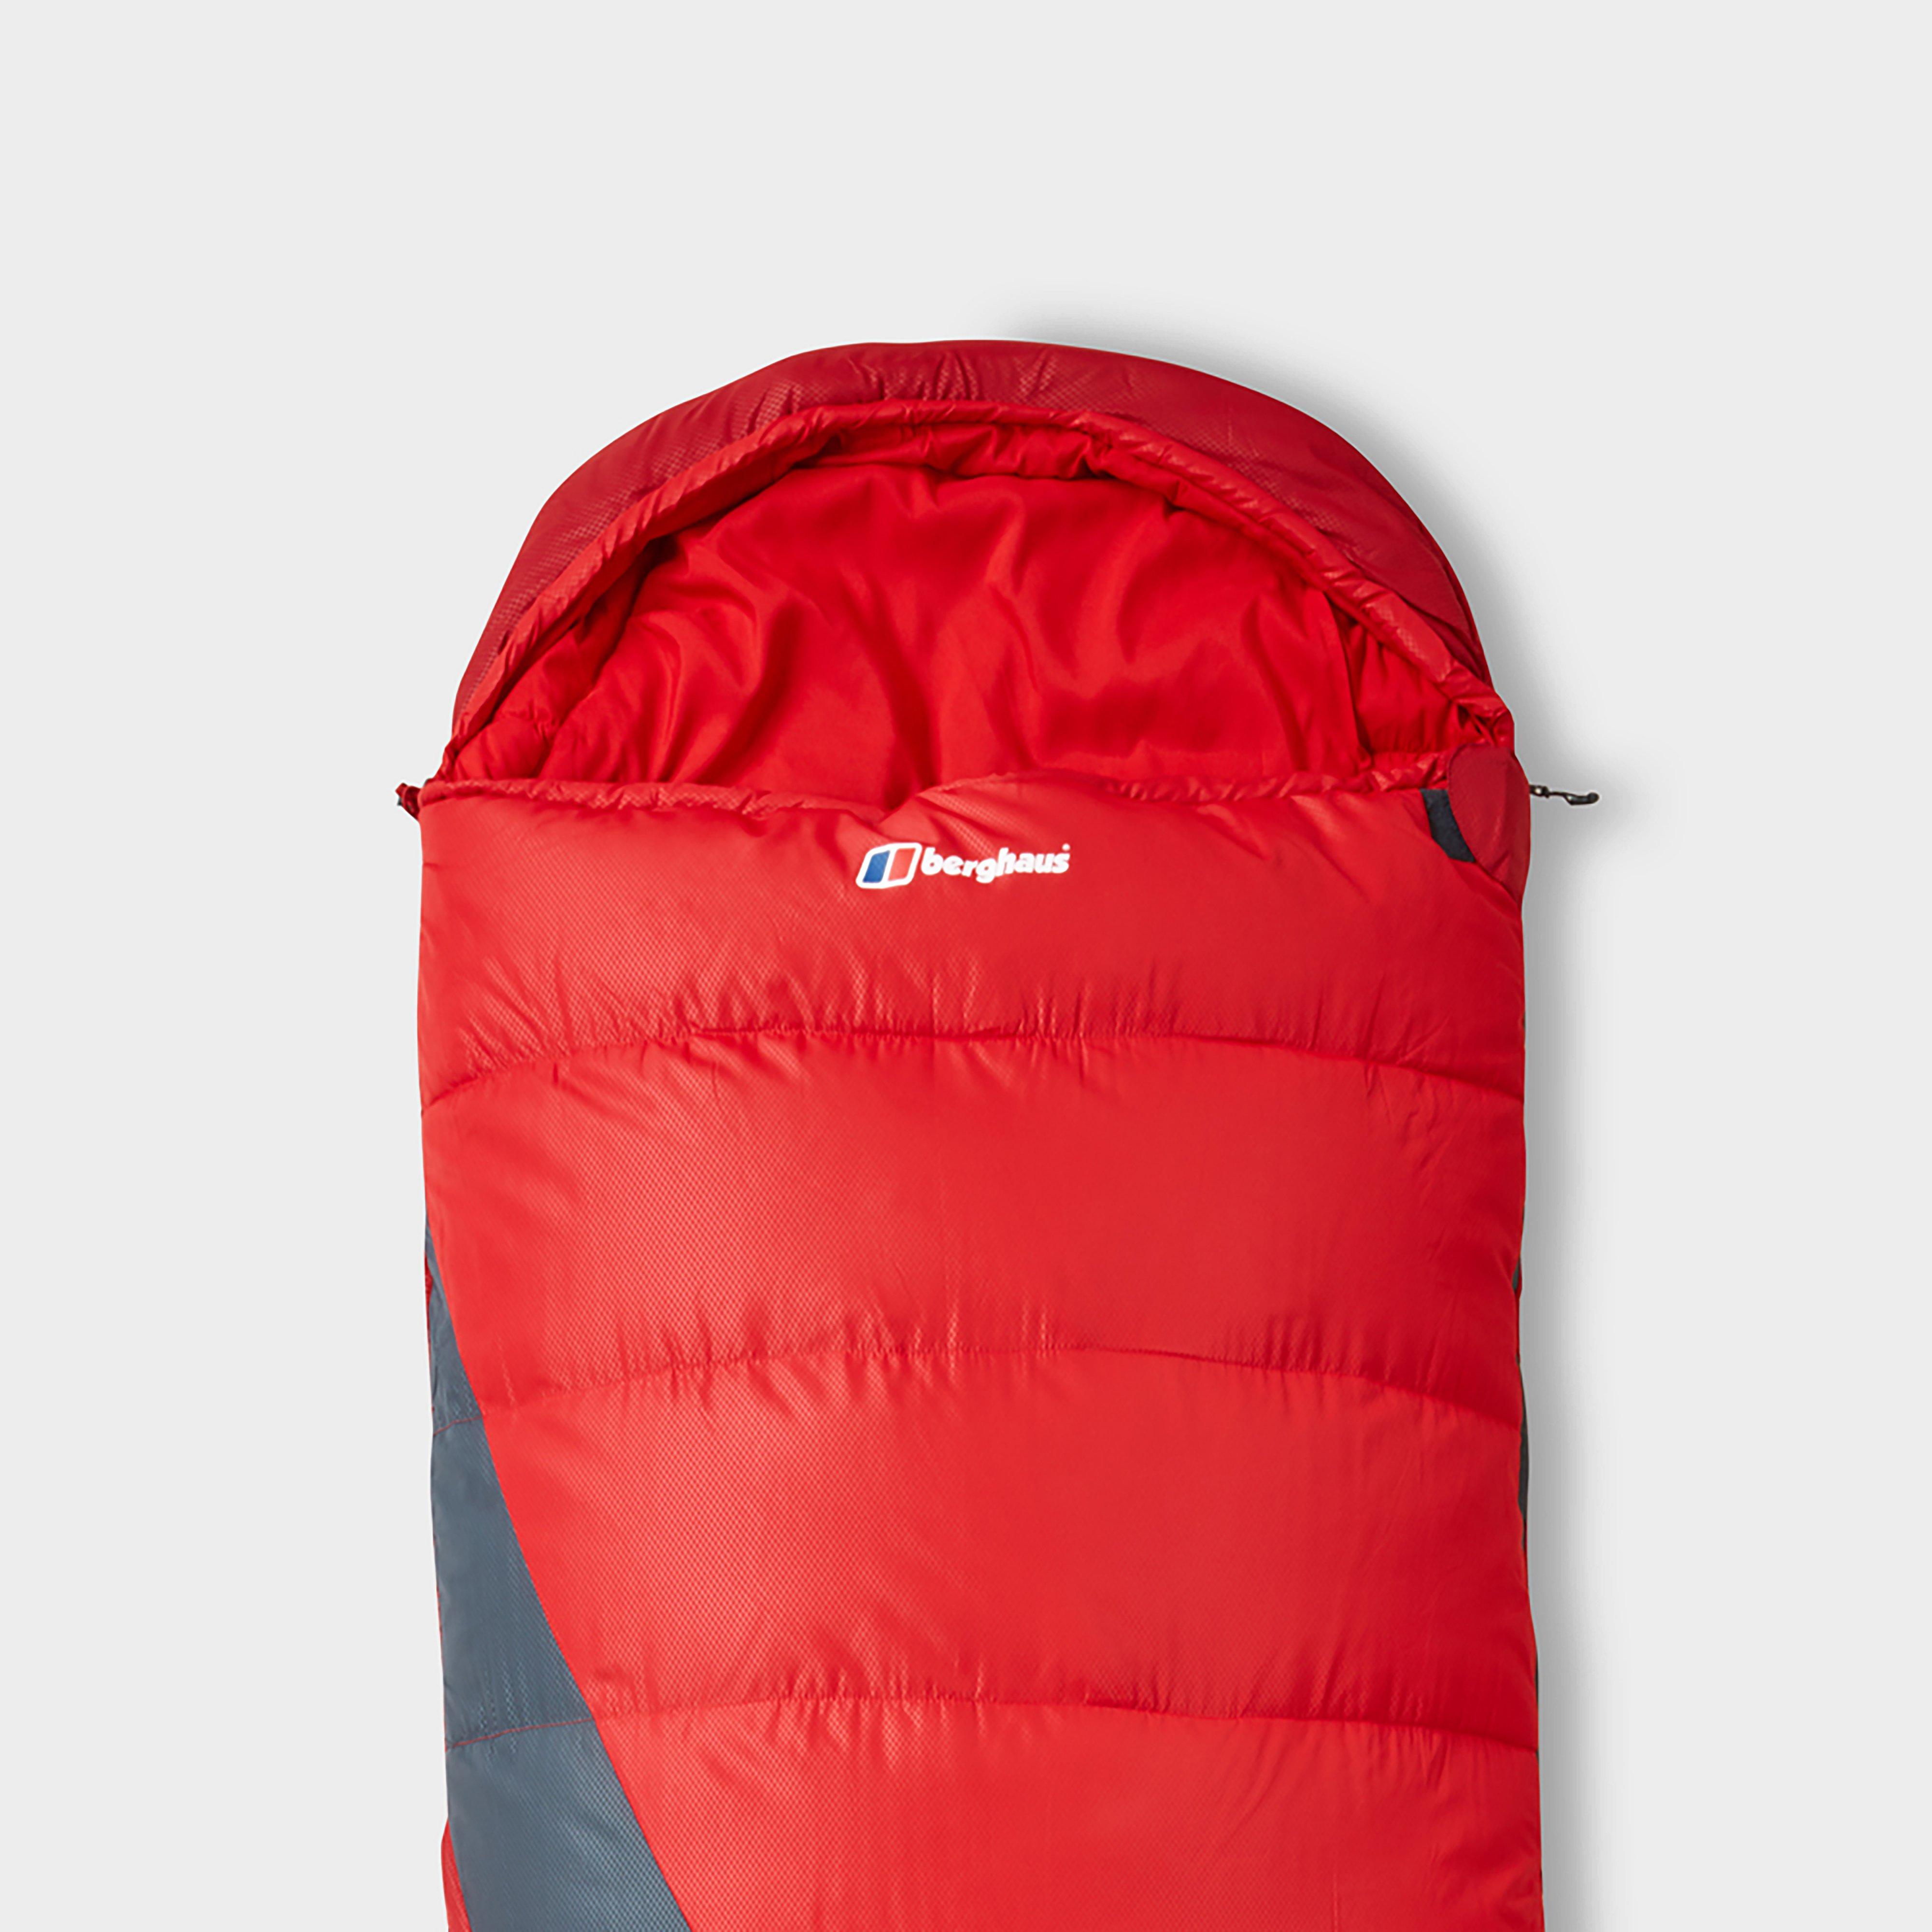 Berghaus Unisex Transition 200c Sleeping Bag - Red  Red